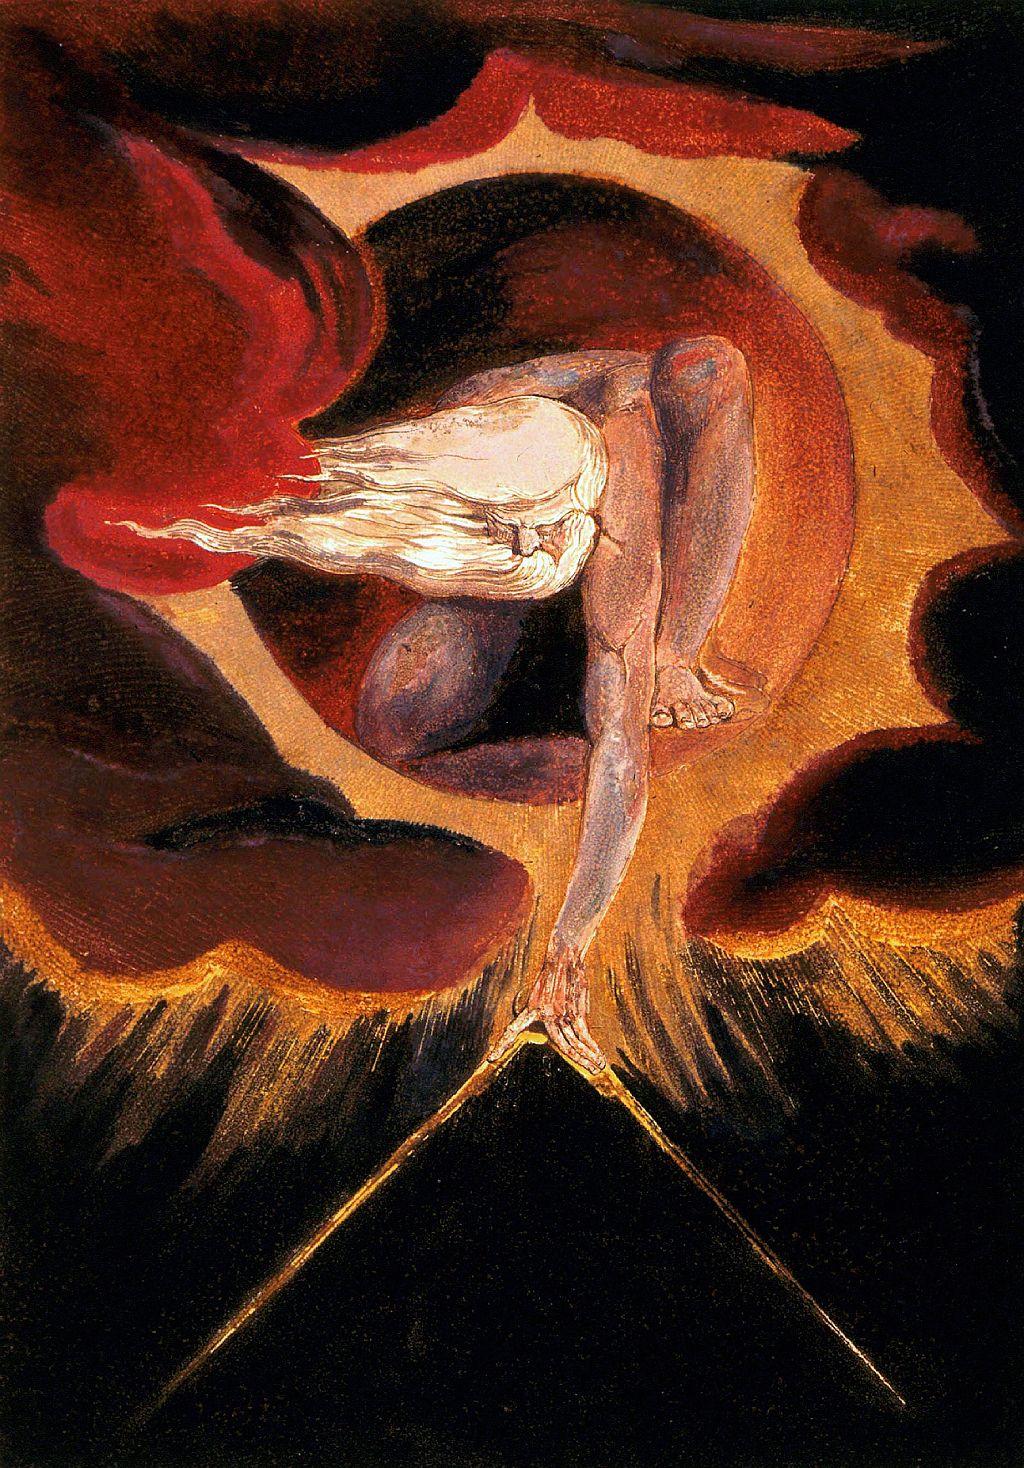 "El anciano de los días", el grabado de William Blake, con Urizen sosteniendo un compás